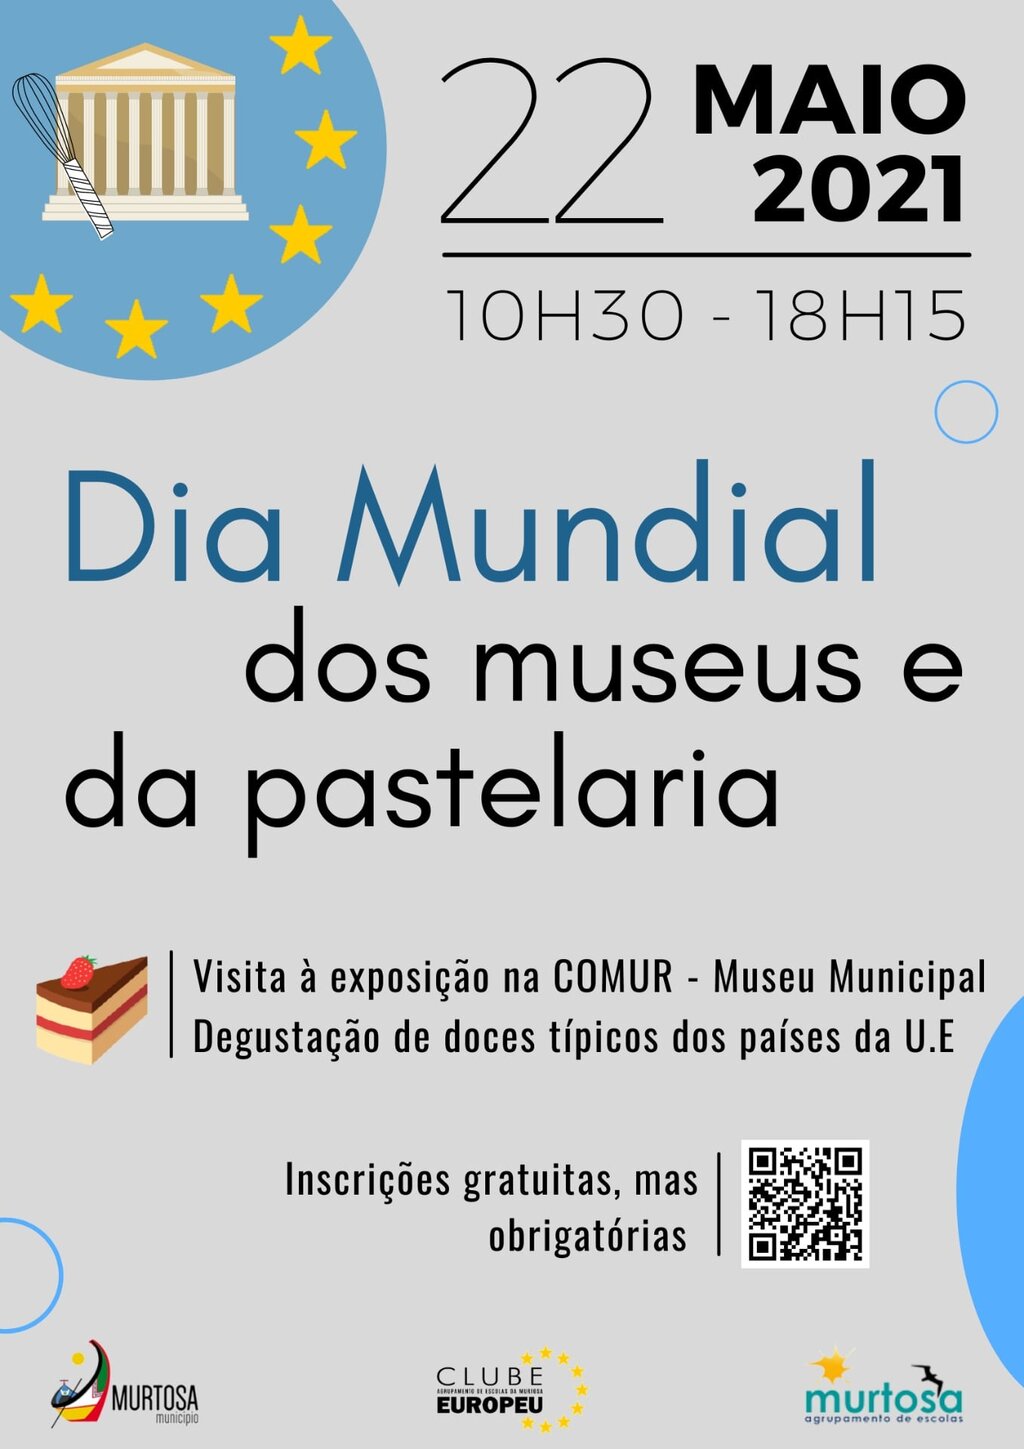 Comur - Museu Municipal Comemora Dia Mundial dos Museus e da Pastelaria com Degustação de Doçaria...